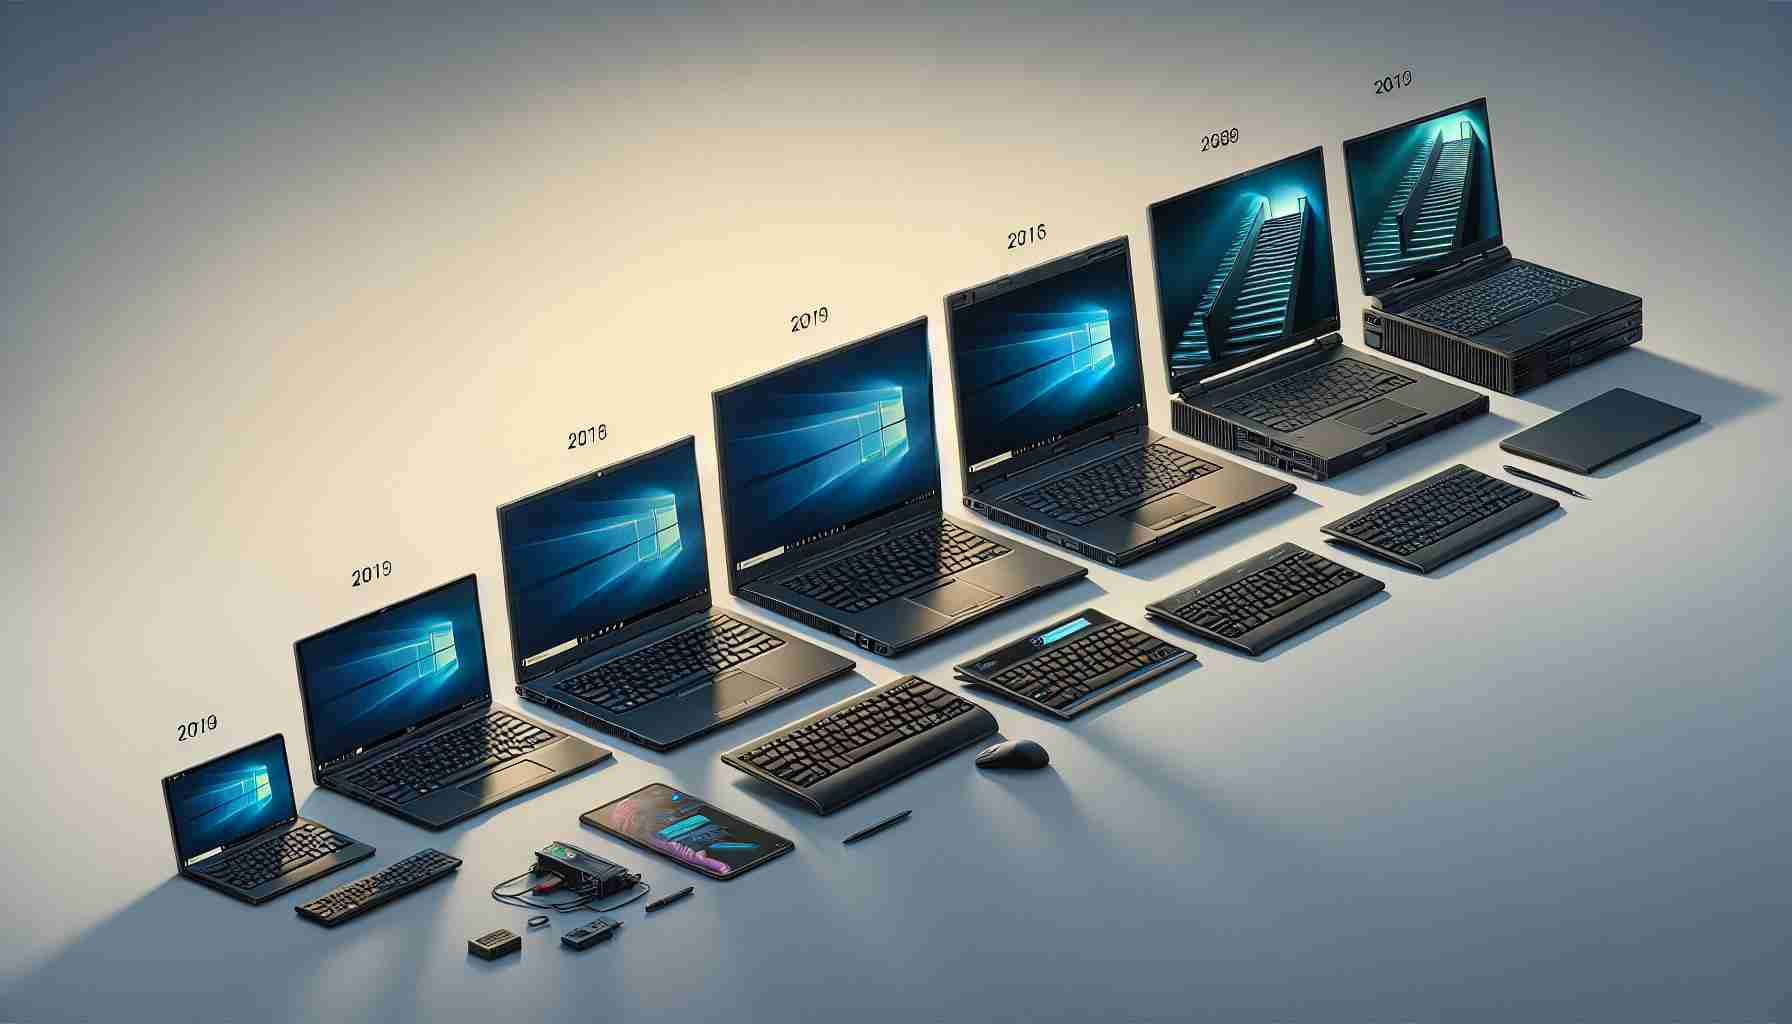 The Evolution of Lenovo’s Flagship Enterprise Laptop